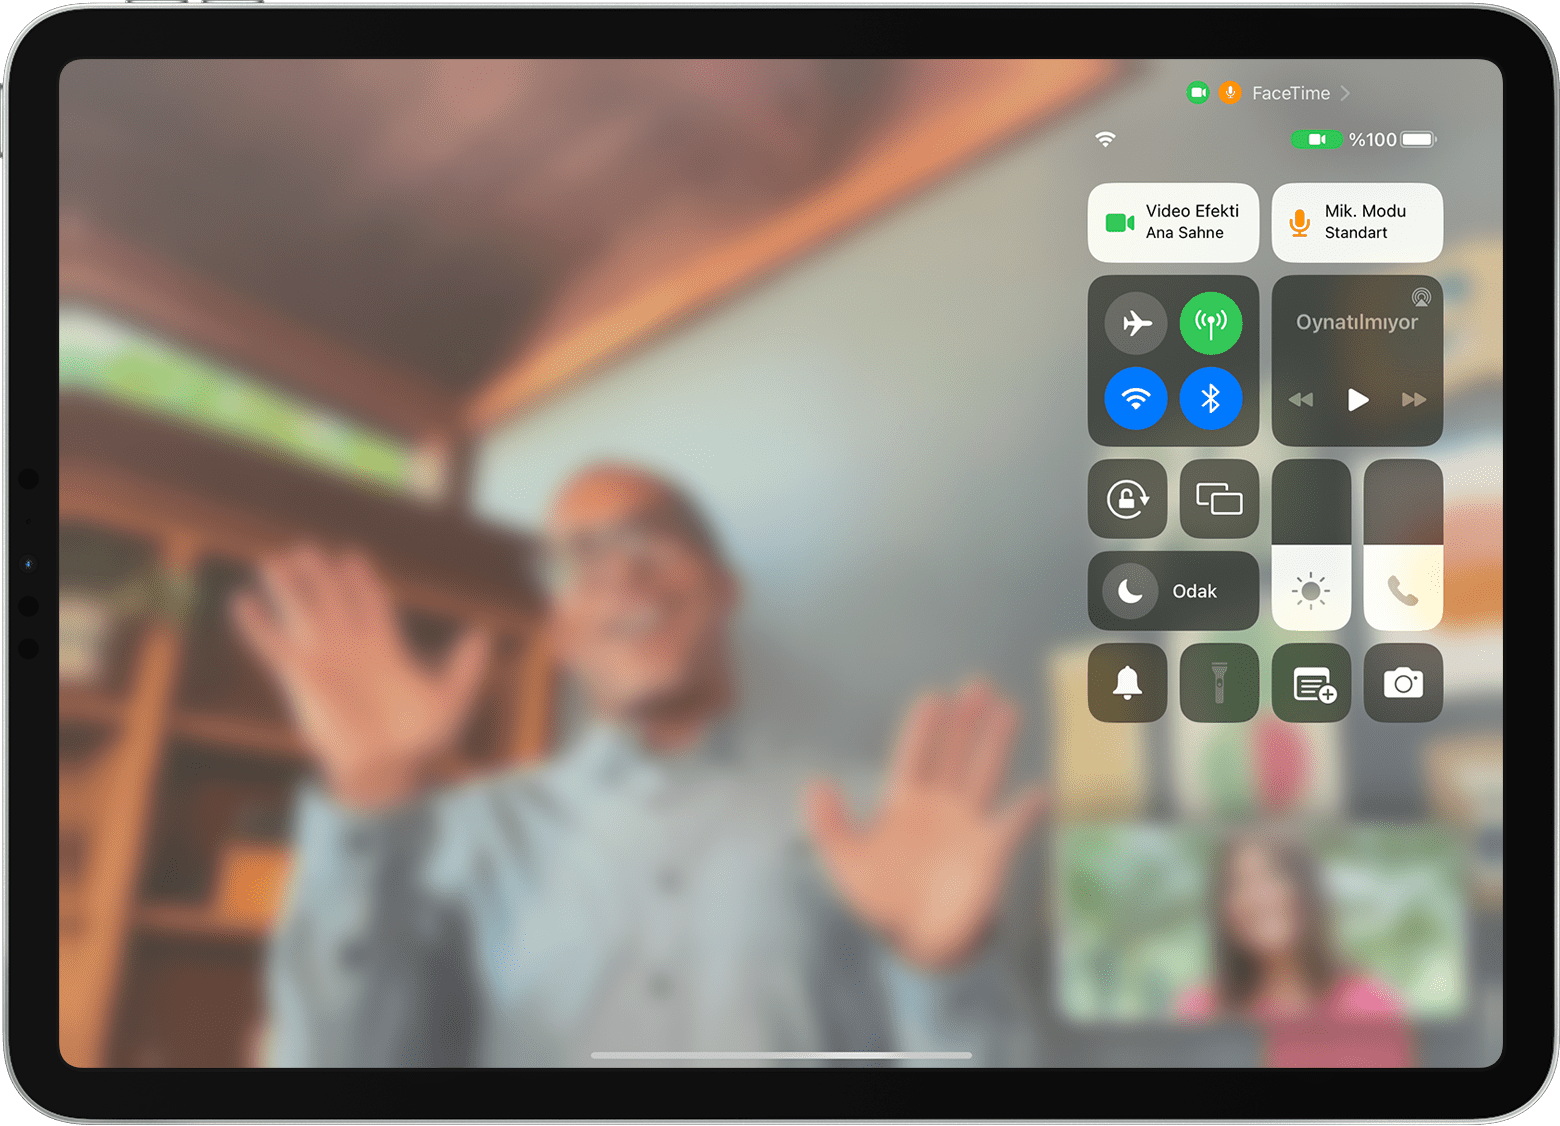 iPad ekranında, Video Efekti düğmesi de dahil olmak üzere Denetim Merkezi'nin görünür olduğu bir FaceTime araması gösteriliyor